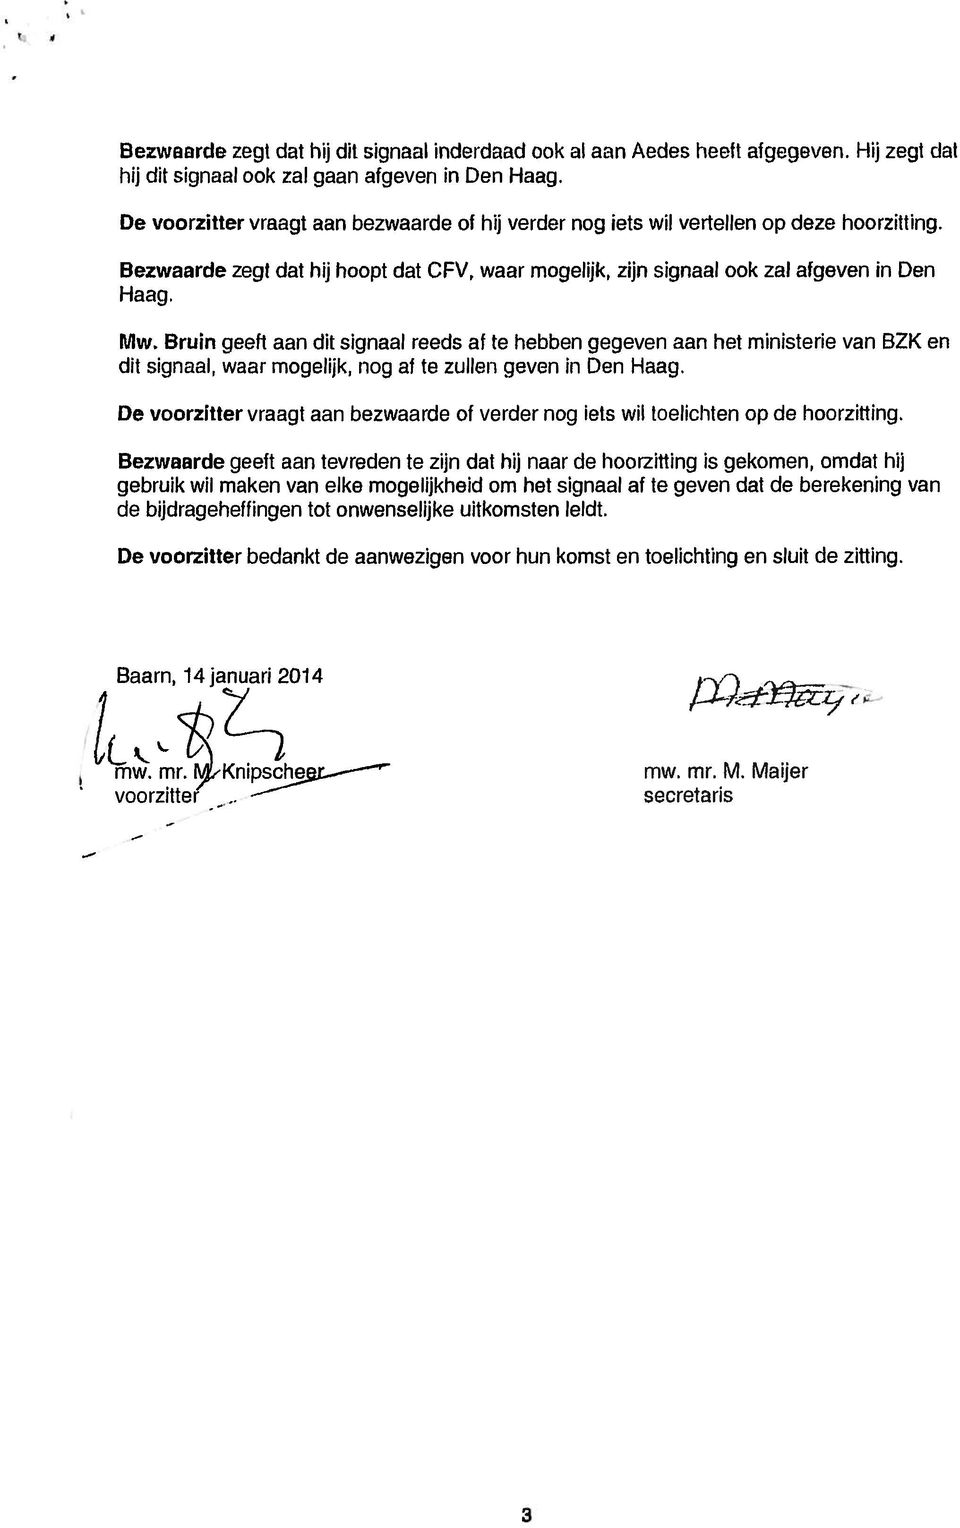 Bruin geeft aan dit signaal reeds af te hebben gegeven aan het ministerie van BZK en dit signaal, waar mogelijk, nog al te zullen geven in Den Haag.